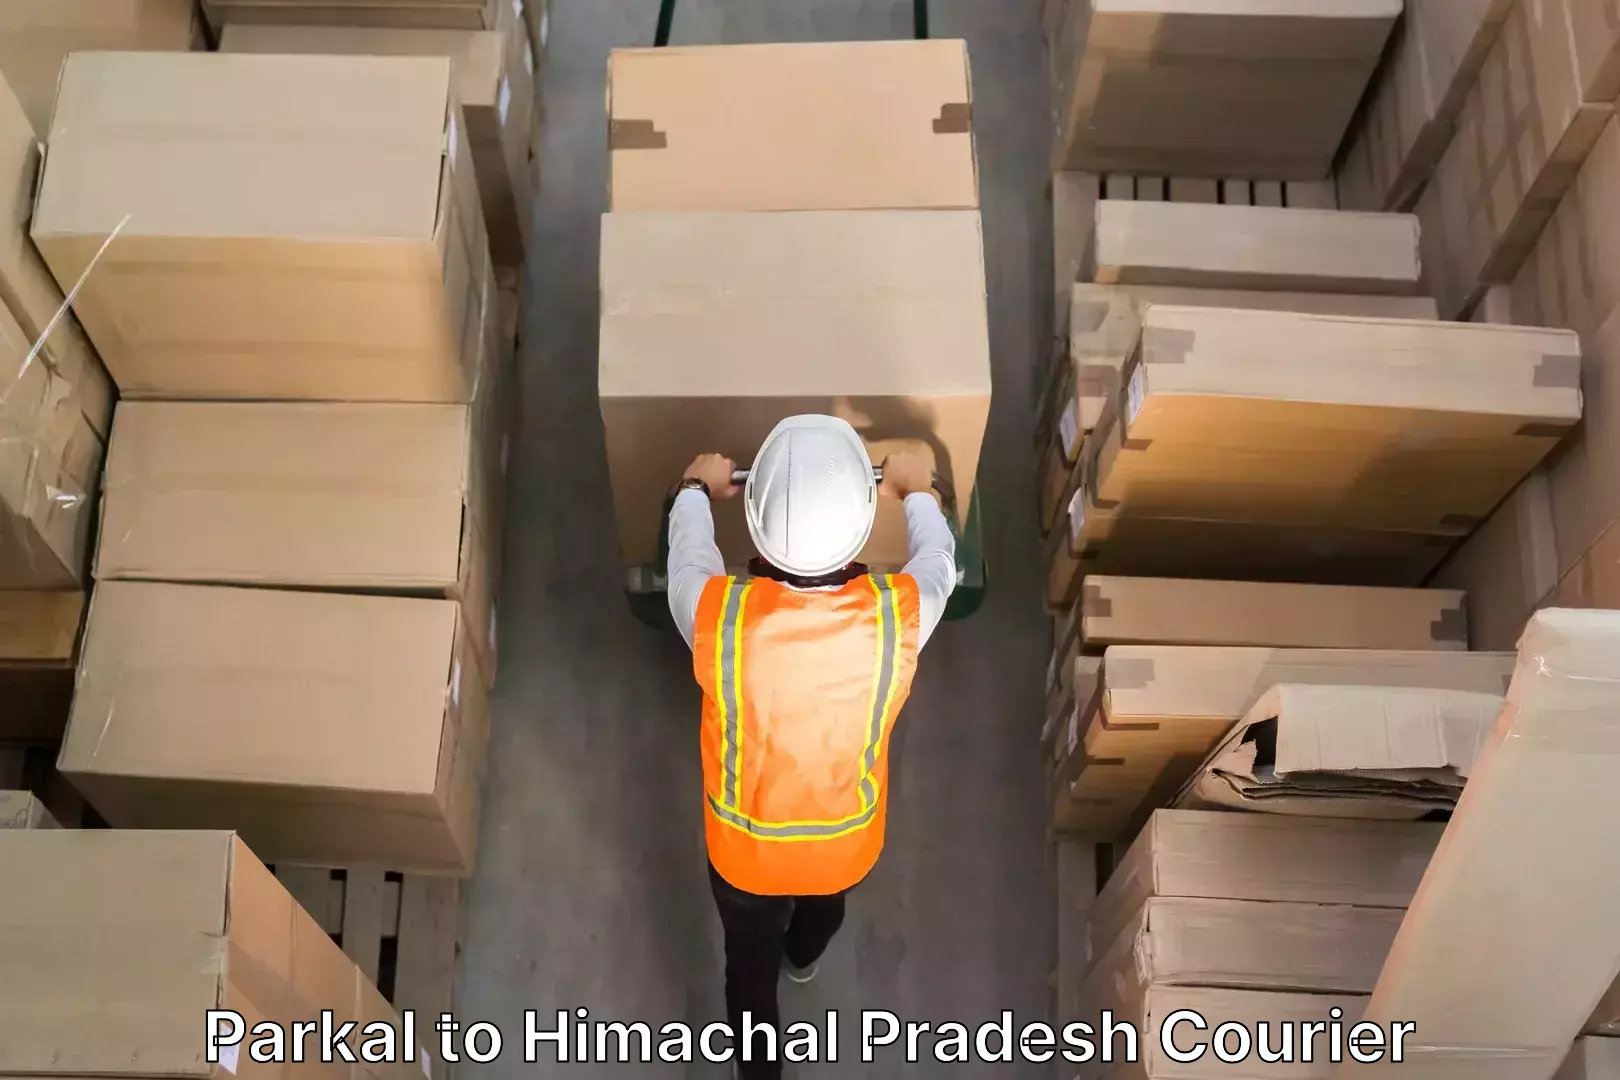 Furniture transport experts Parkal to Himachal Pradesh